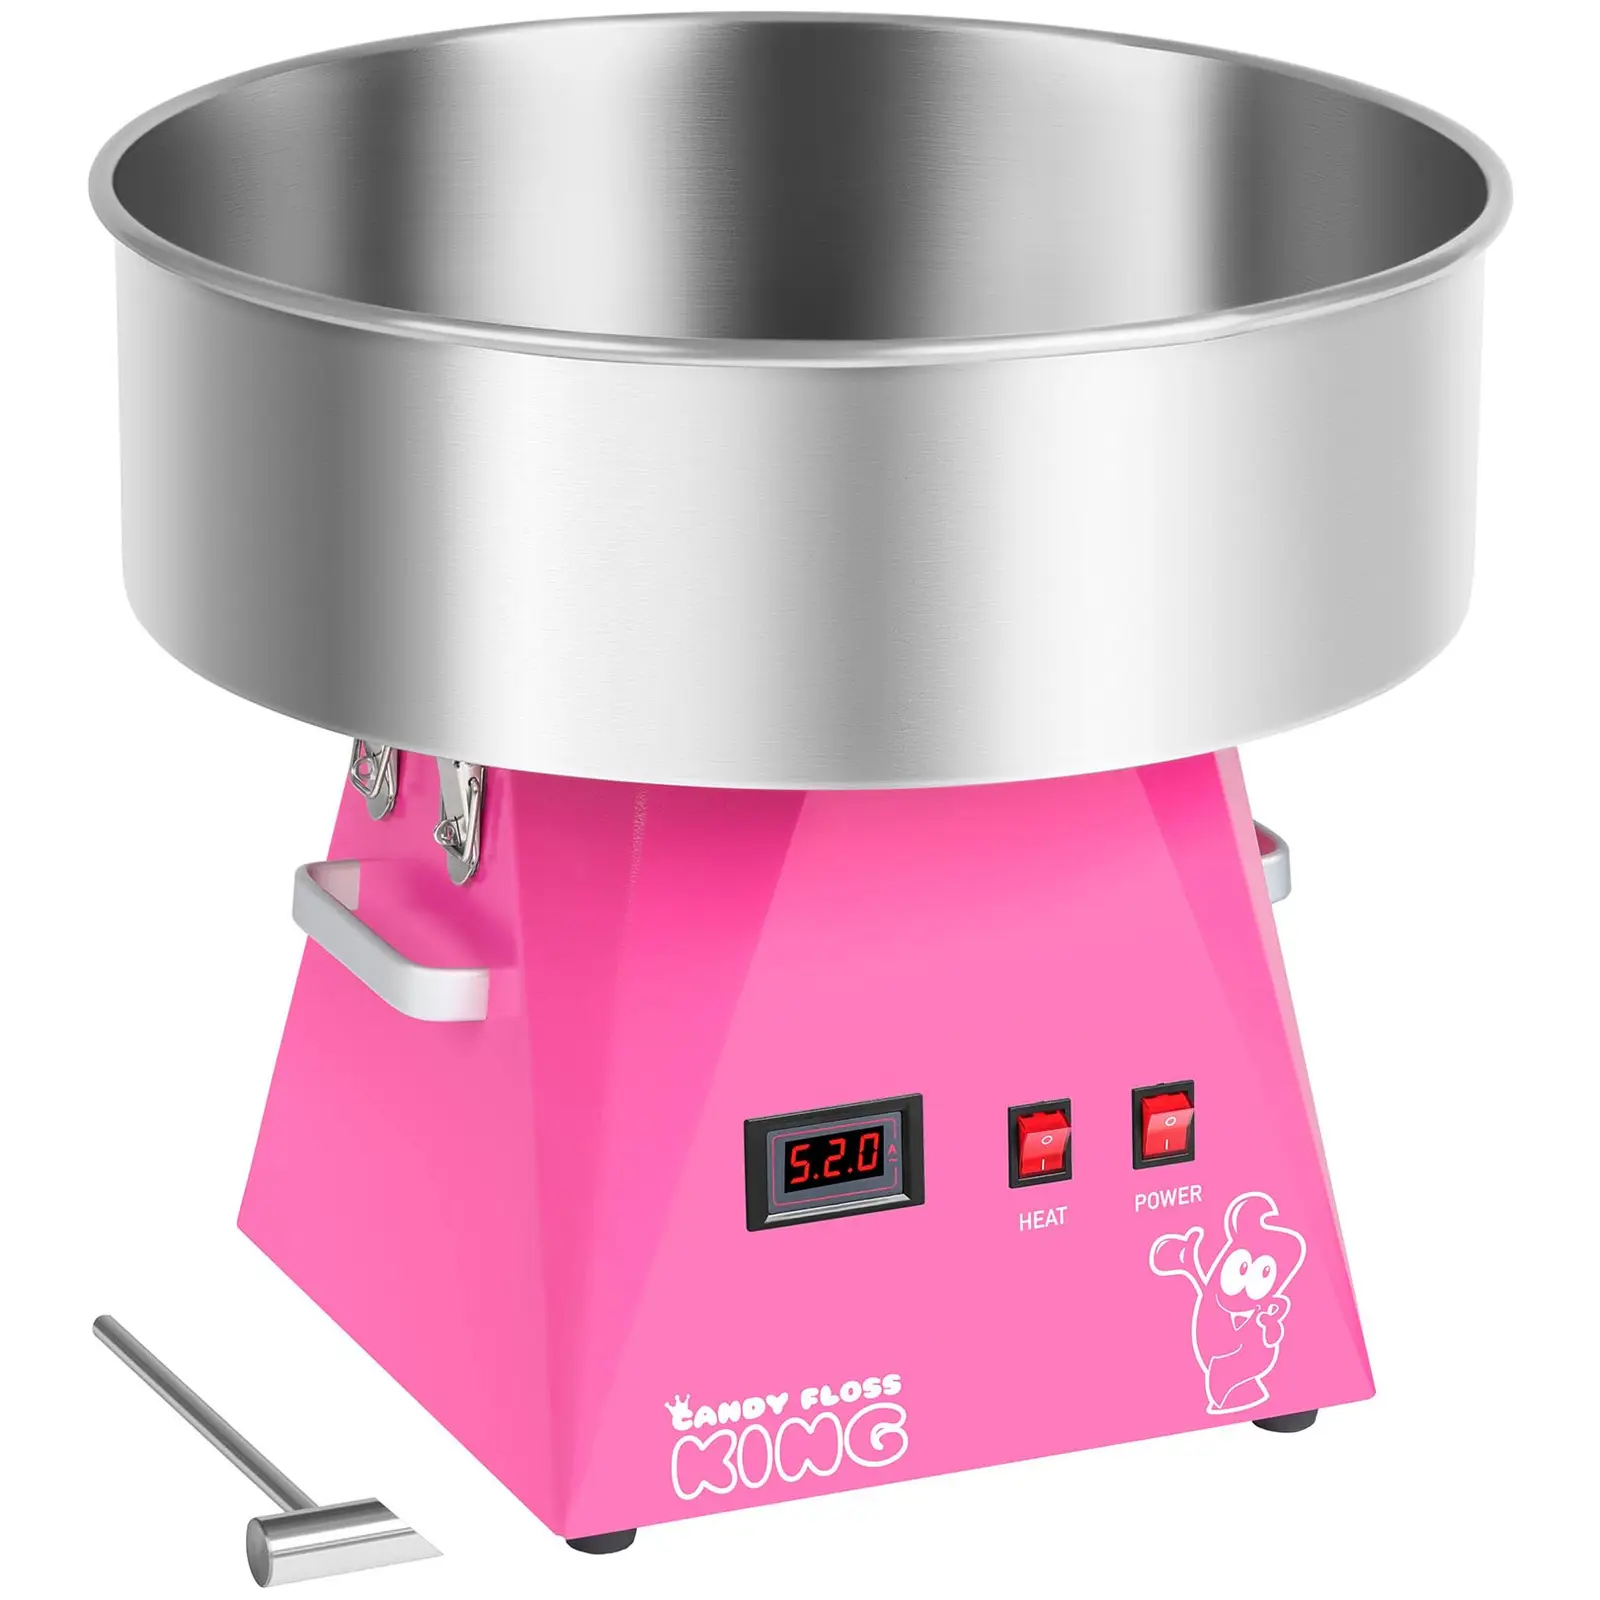 Sockervaddsmaskin - set - med vagn - 52 cm - rosa/vit